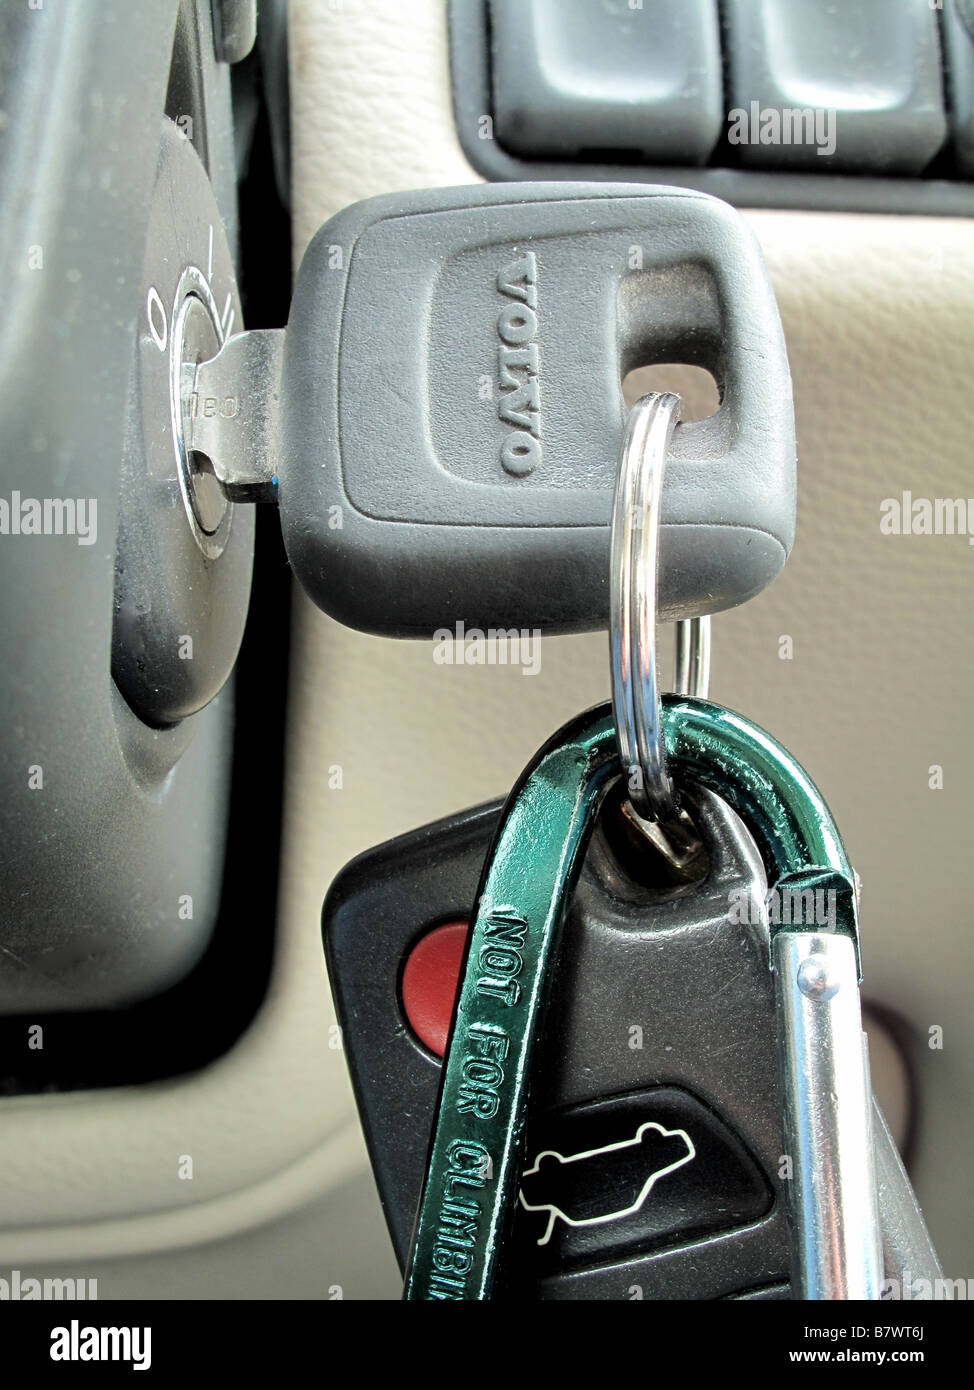 Volvo ignition key. Stock Photo